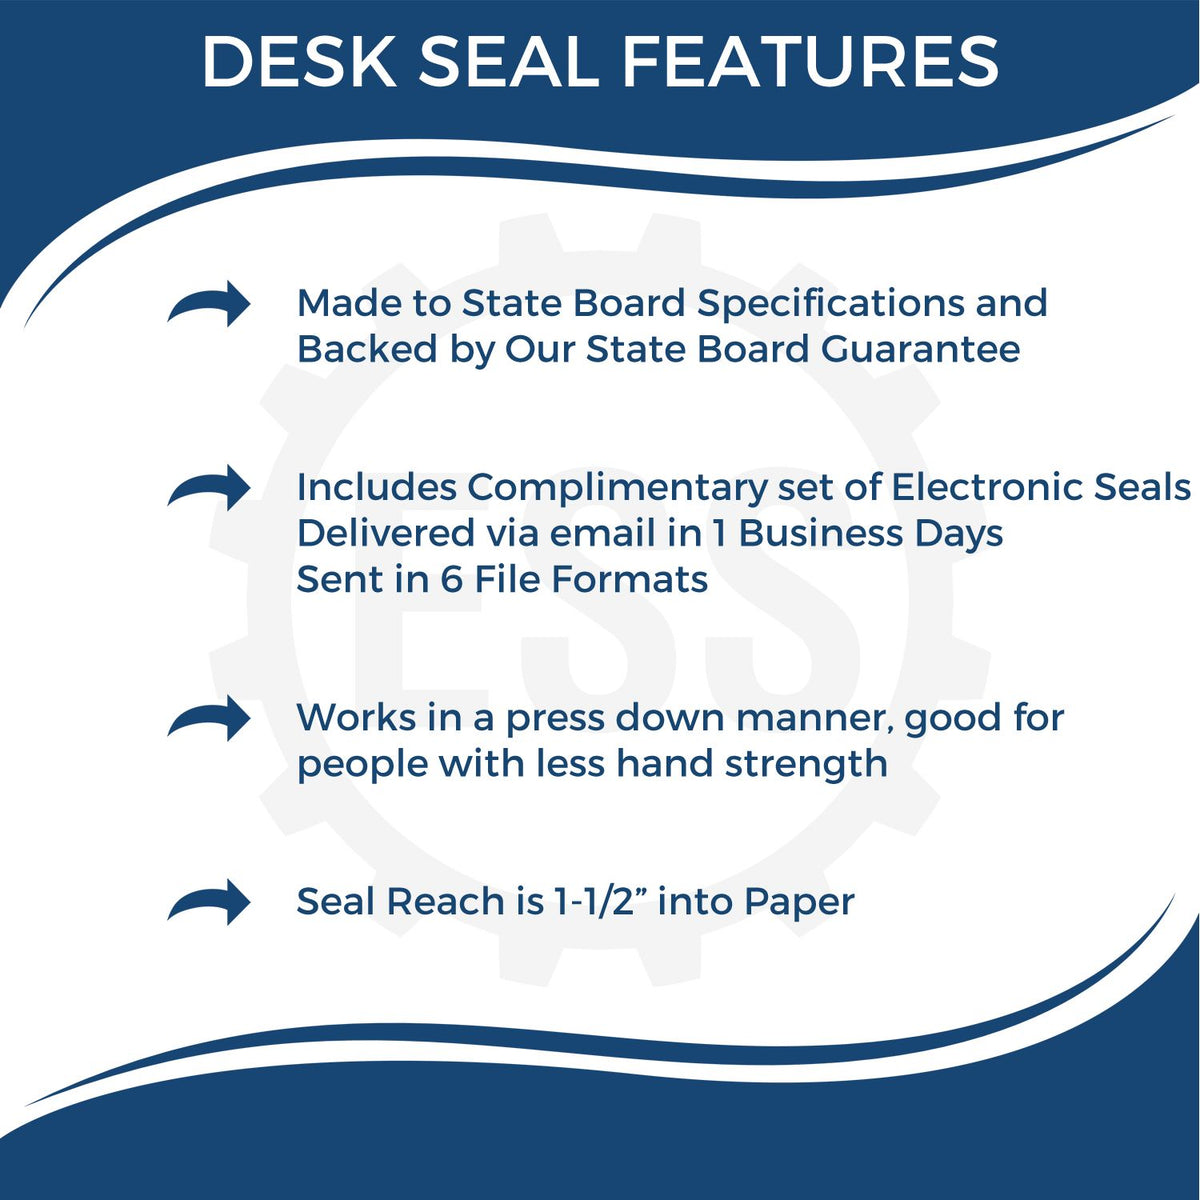 Massachusetts Engineer Desk Seal